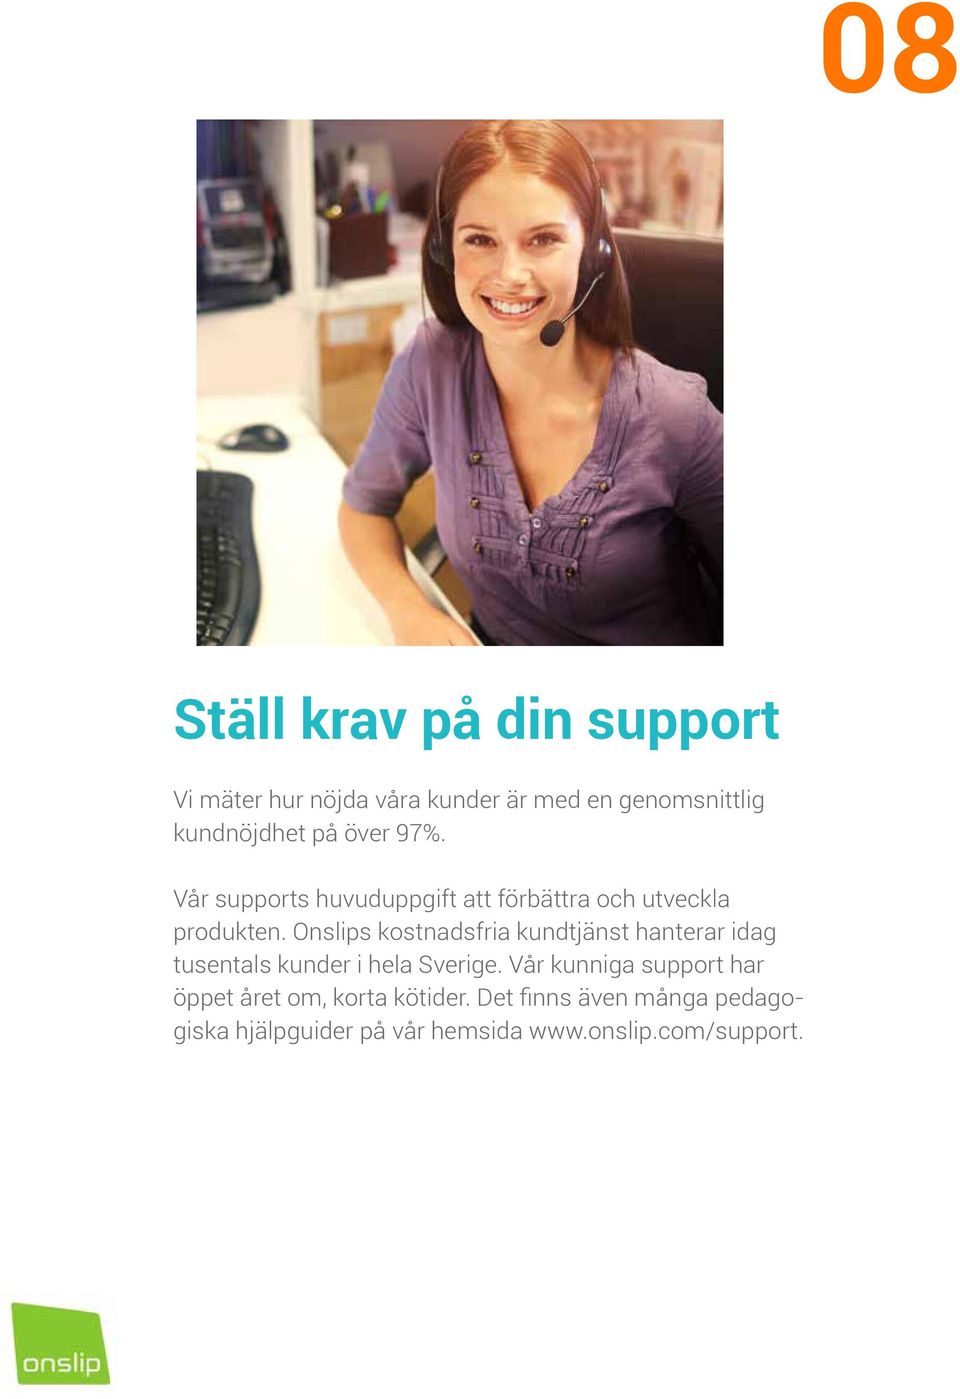 Onslips kostnadsfria kundtjänst hanterar idag tusentals kunder i hela Sverige.